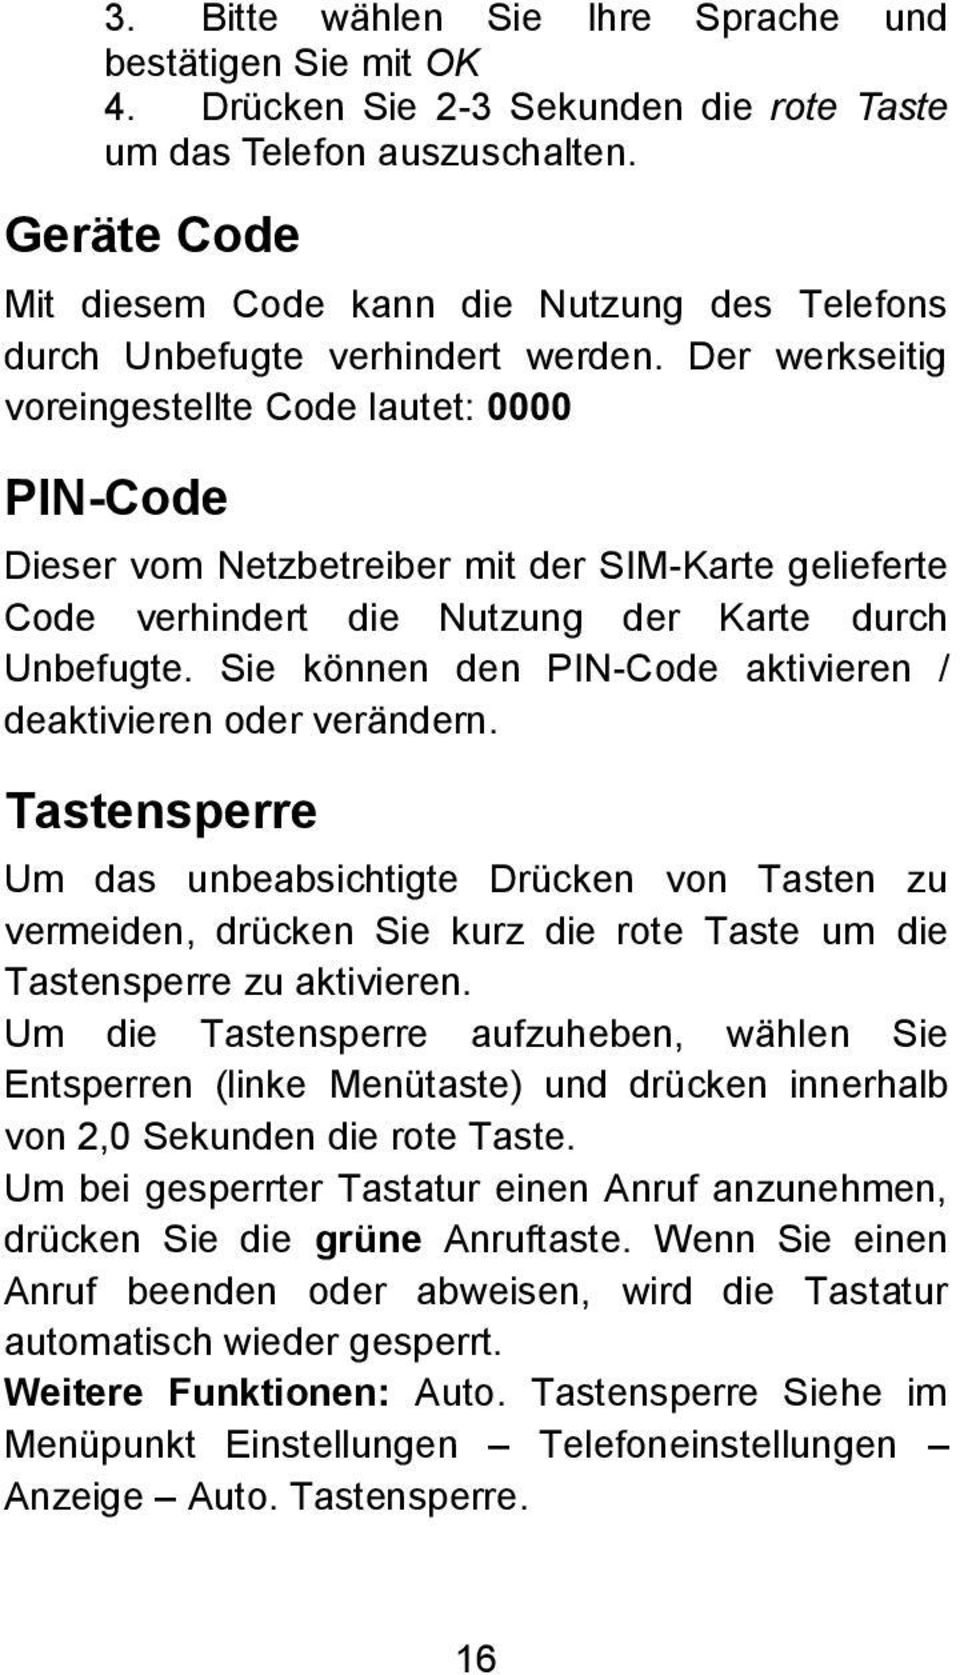 Der werkseitig voreingestellte Code lautet: 0000 PIN-Code Dieser vom Netzbetreiber mit der SIM-Karte gelieferte Code verhindert die Nutzung der Karte durch Unbefugte.